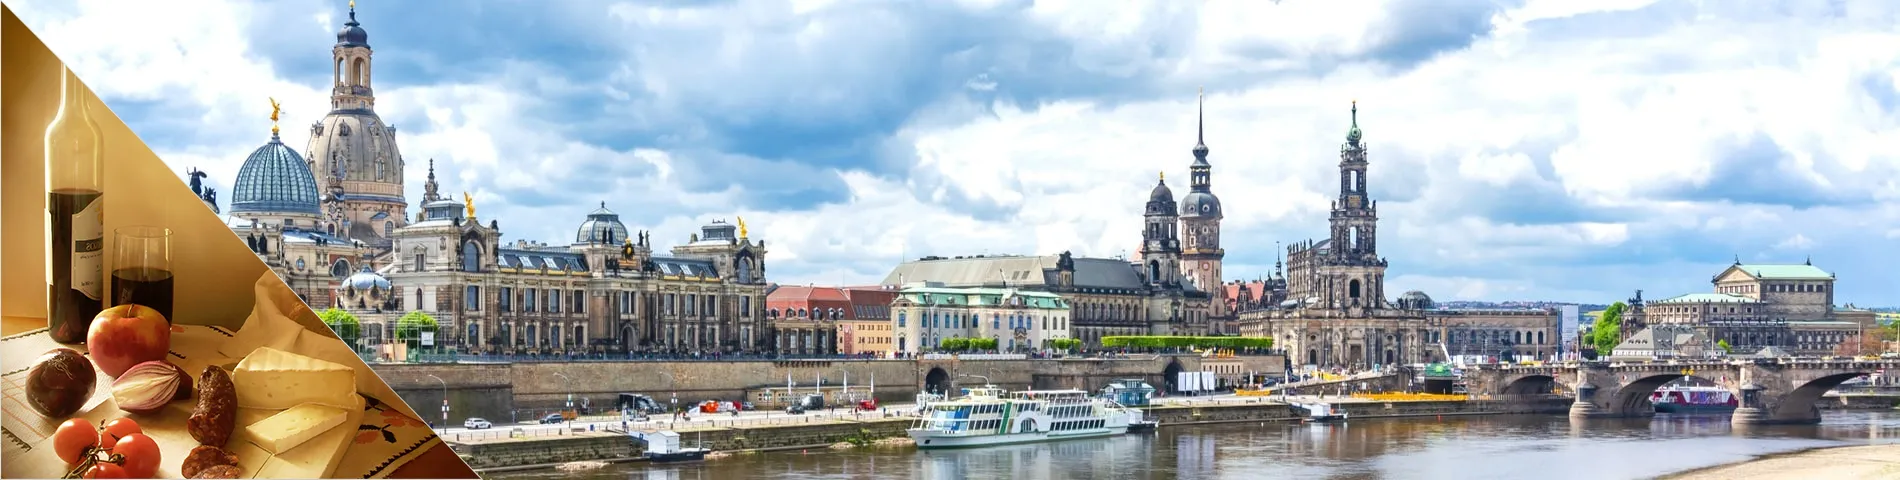 Dresden - Tyska & kultur